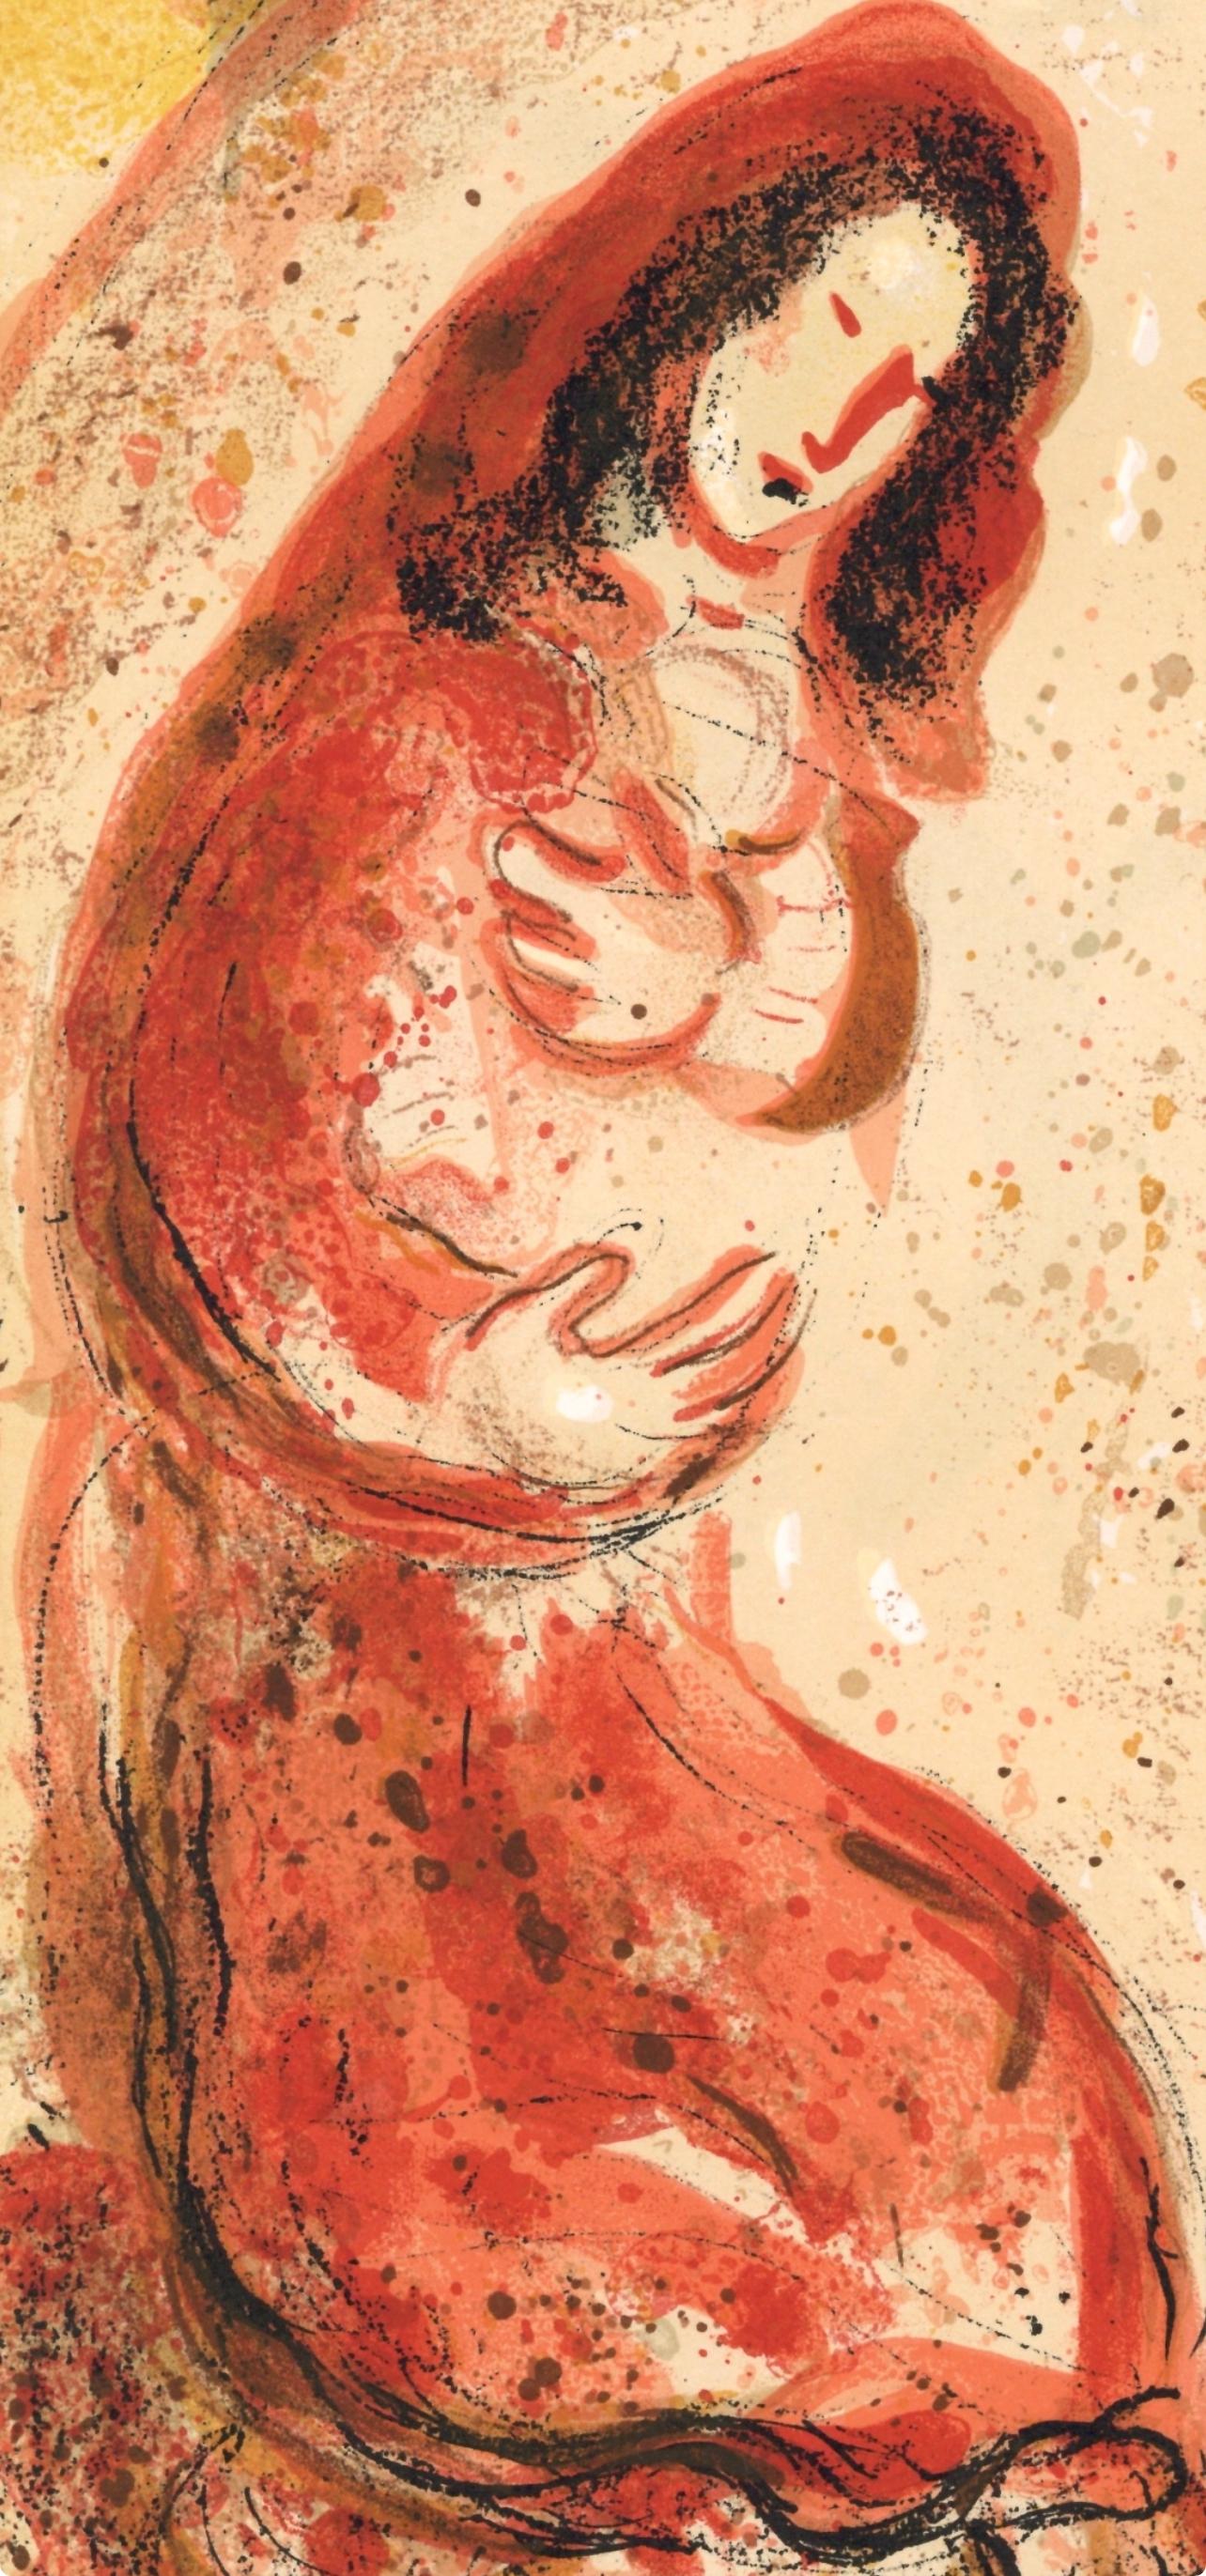 Lithographie auf Velin. Beschriftung: Unsigniert und nicht nummeriert, wie ausgegeben. Guter Zustand. Anmerkungen: Aus dem Band, Zeichnungen aus der Bibel von Marc Chagall, Verve: Revue Artistique et Littéraire, Vol. VIII, N° 33-34, 1960.